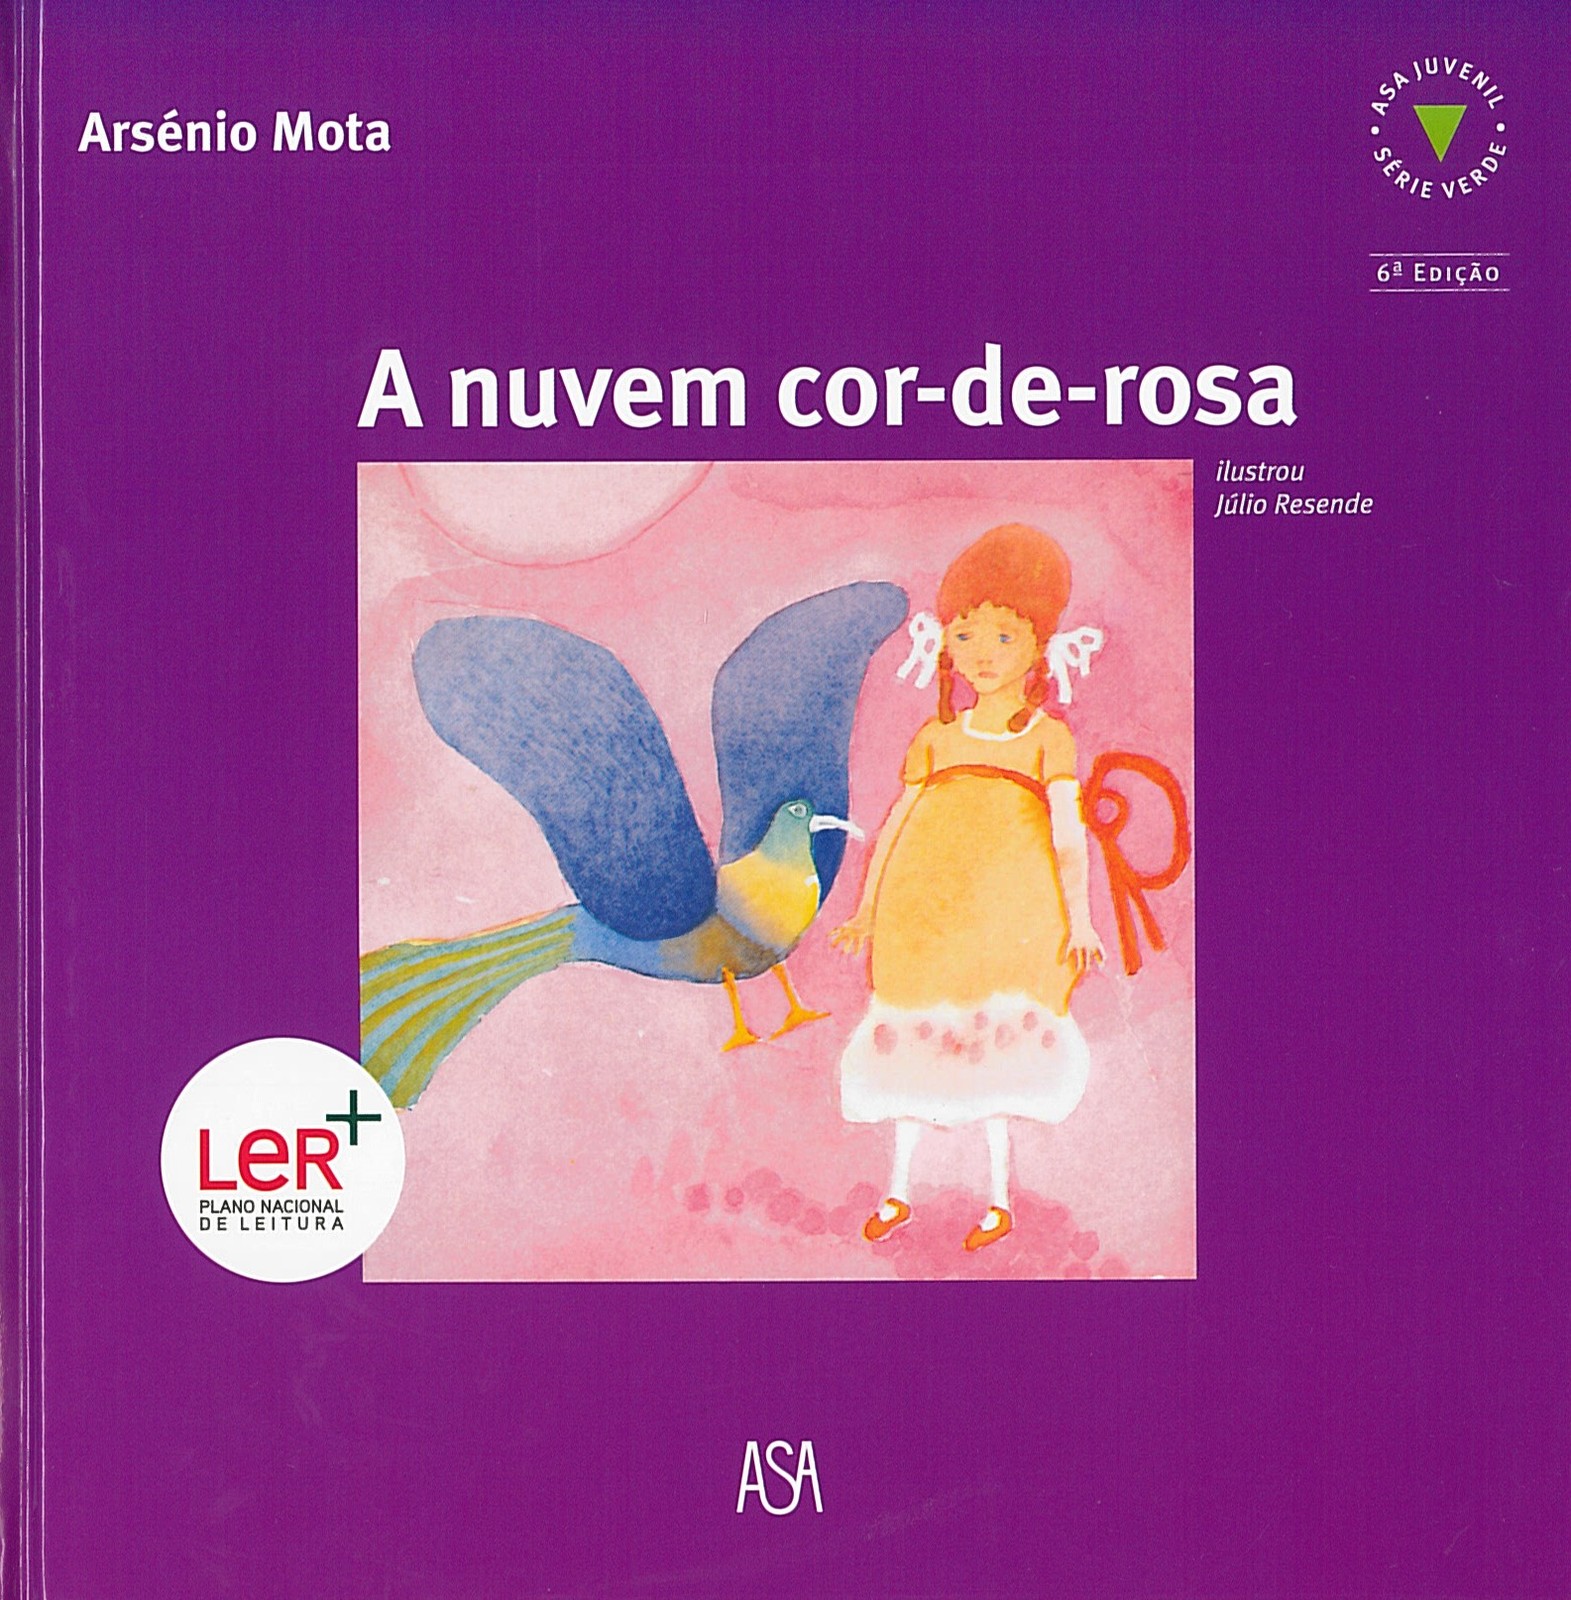  Arsénio Mota - A Nuvem-cor-de-rosa